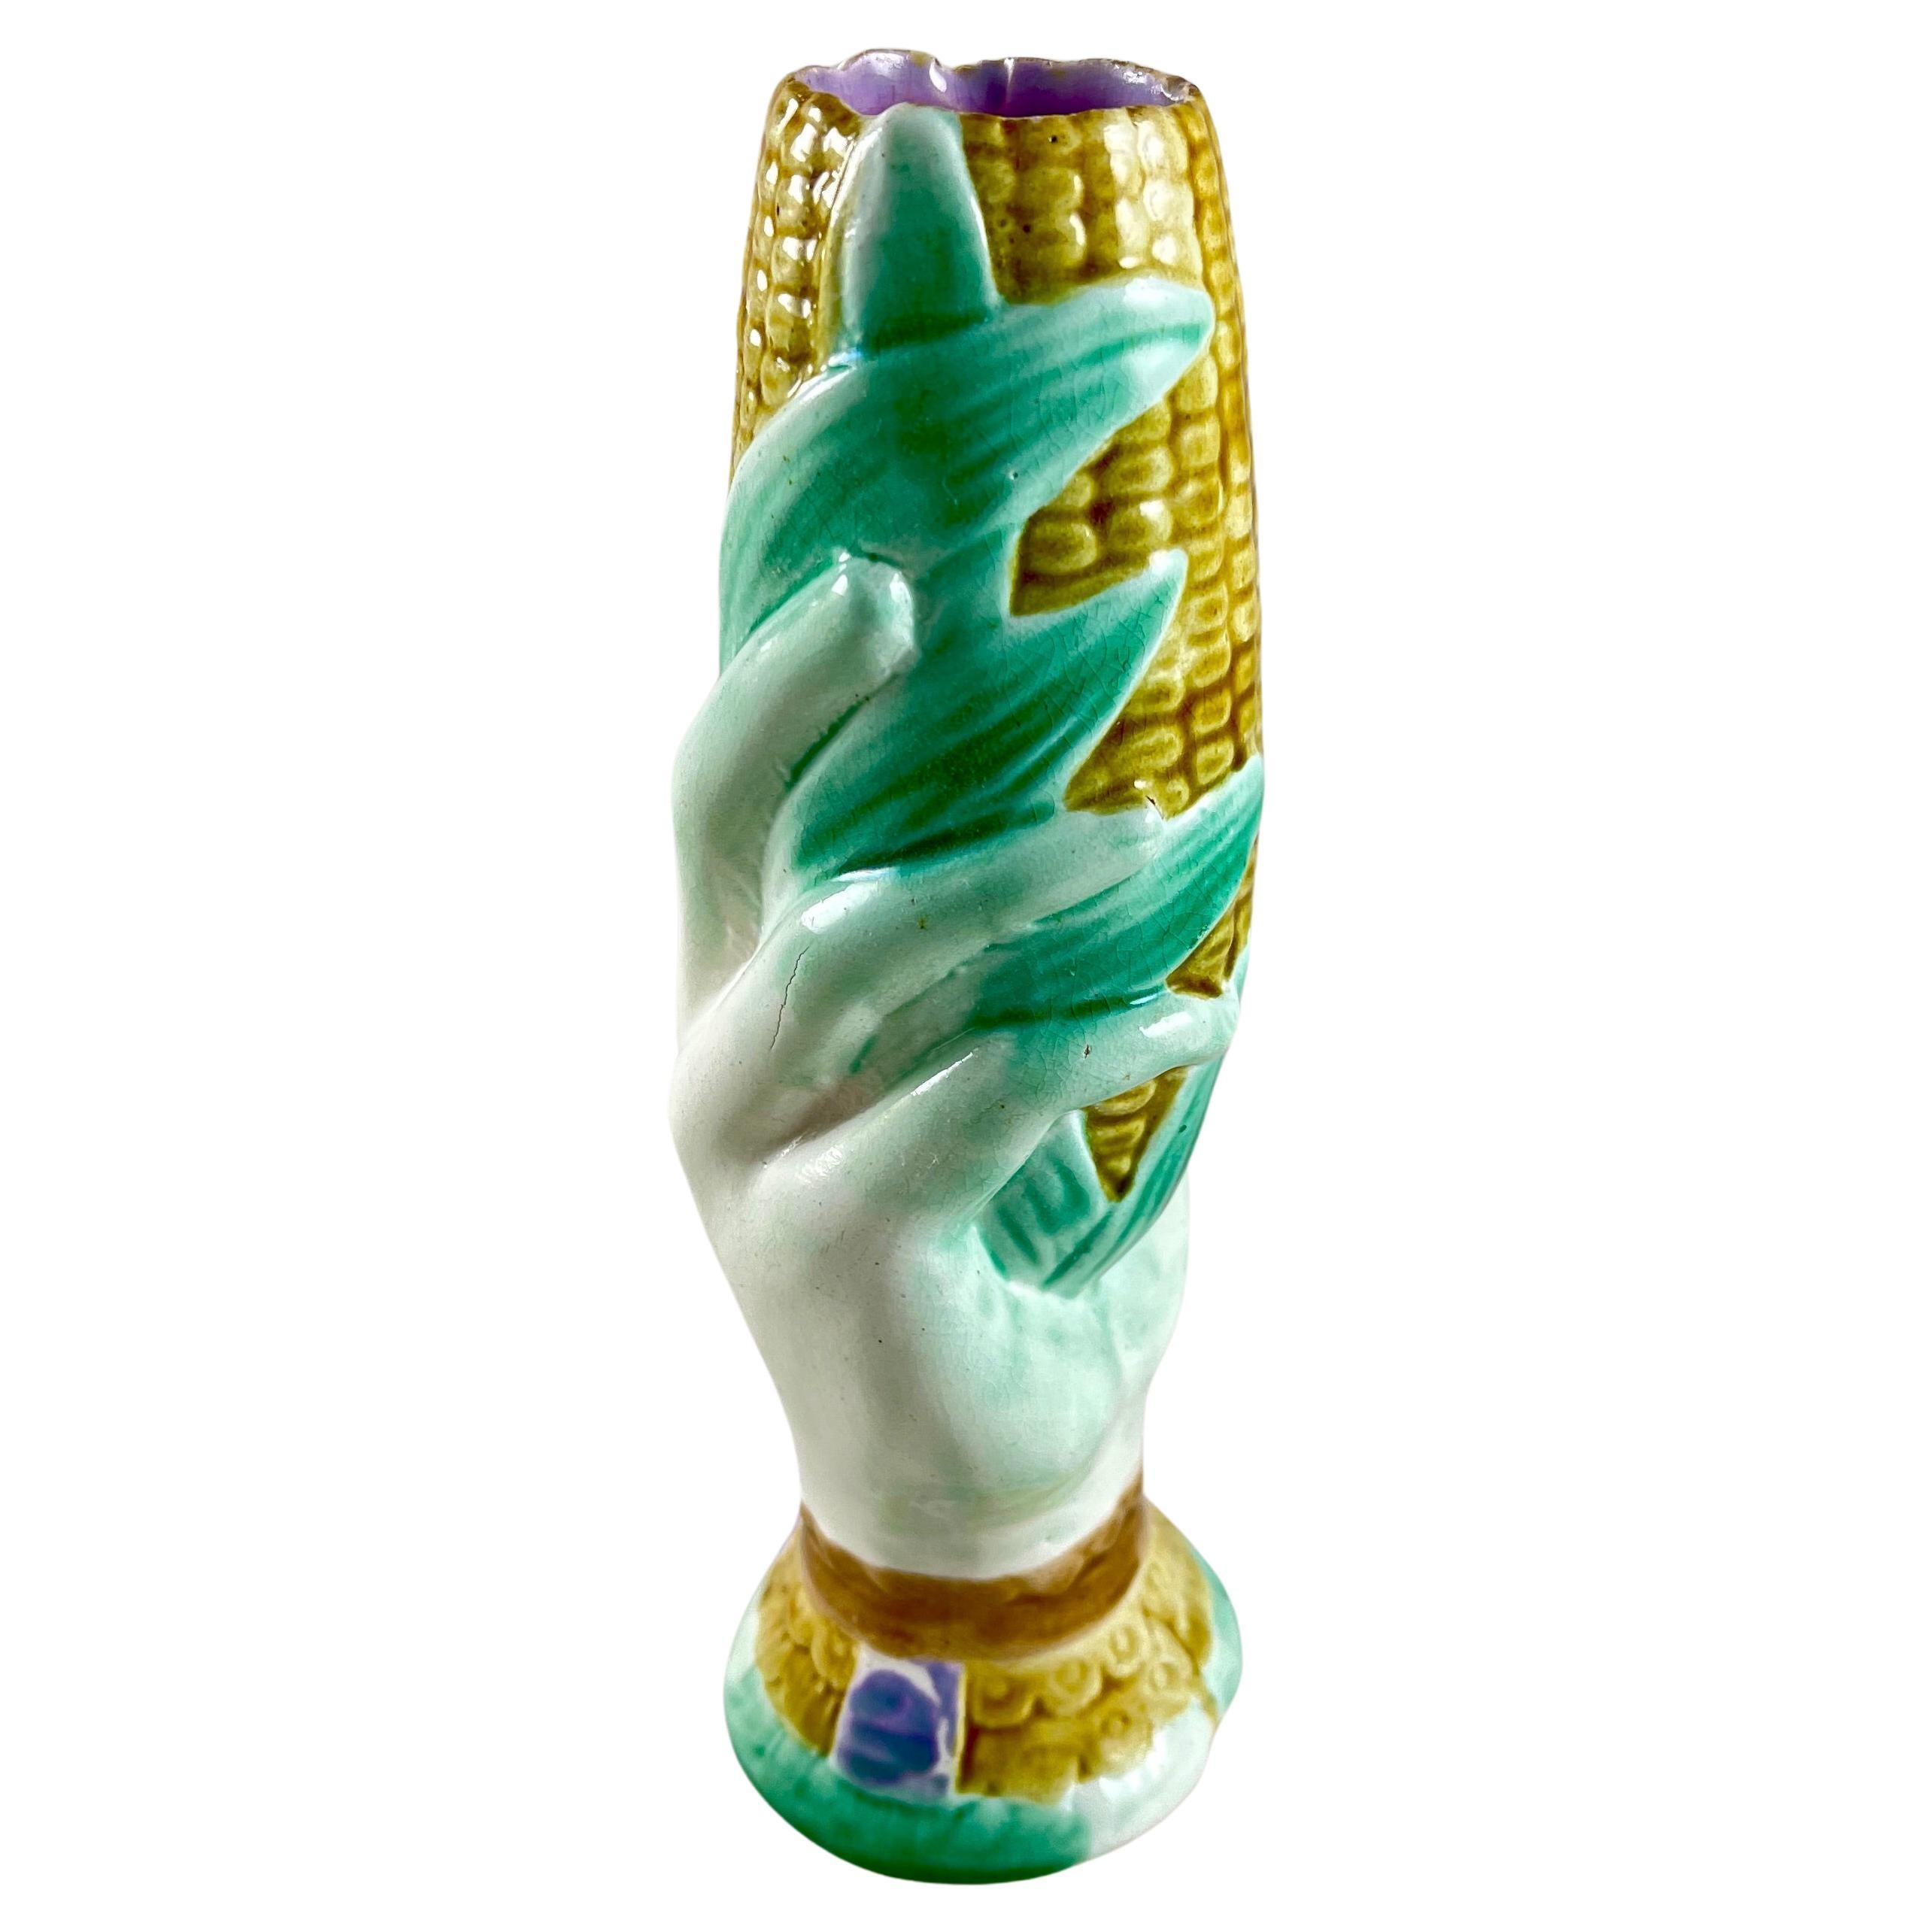 Wardle English Majolica Glazed Hand Holding Corn Spill or Posy Vase